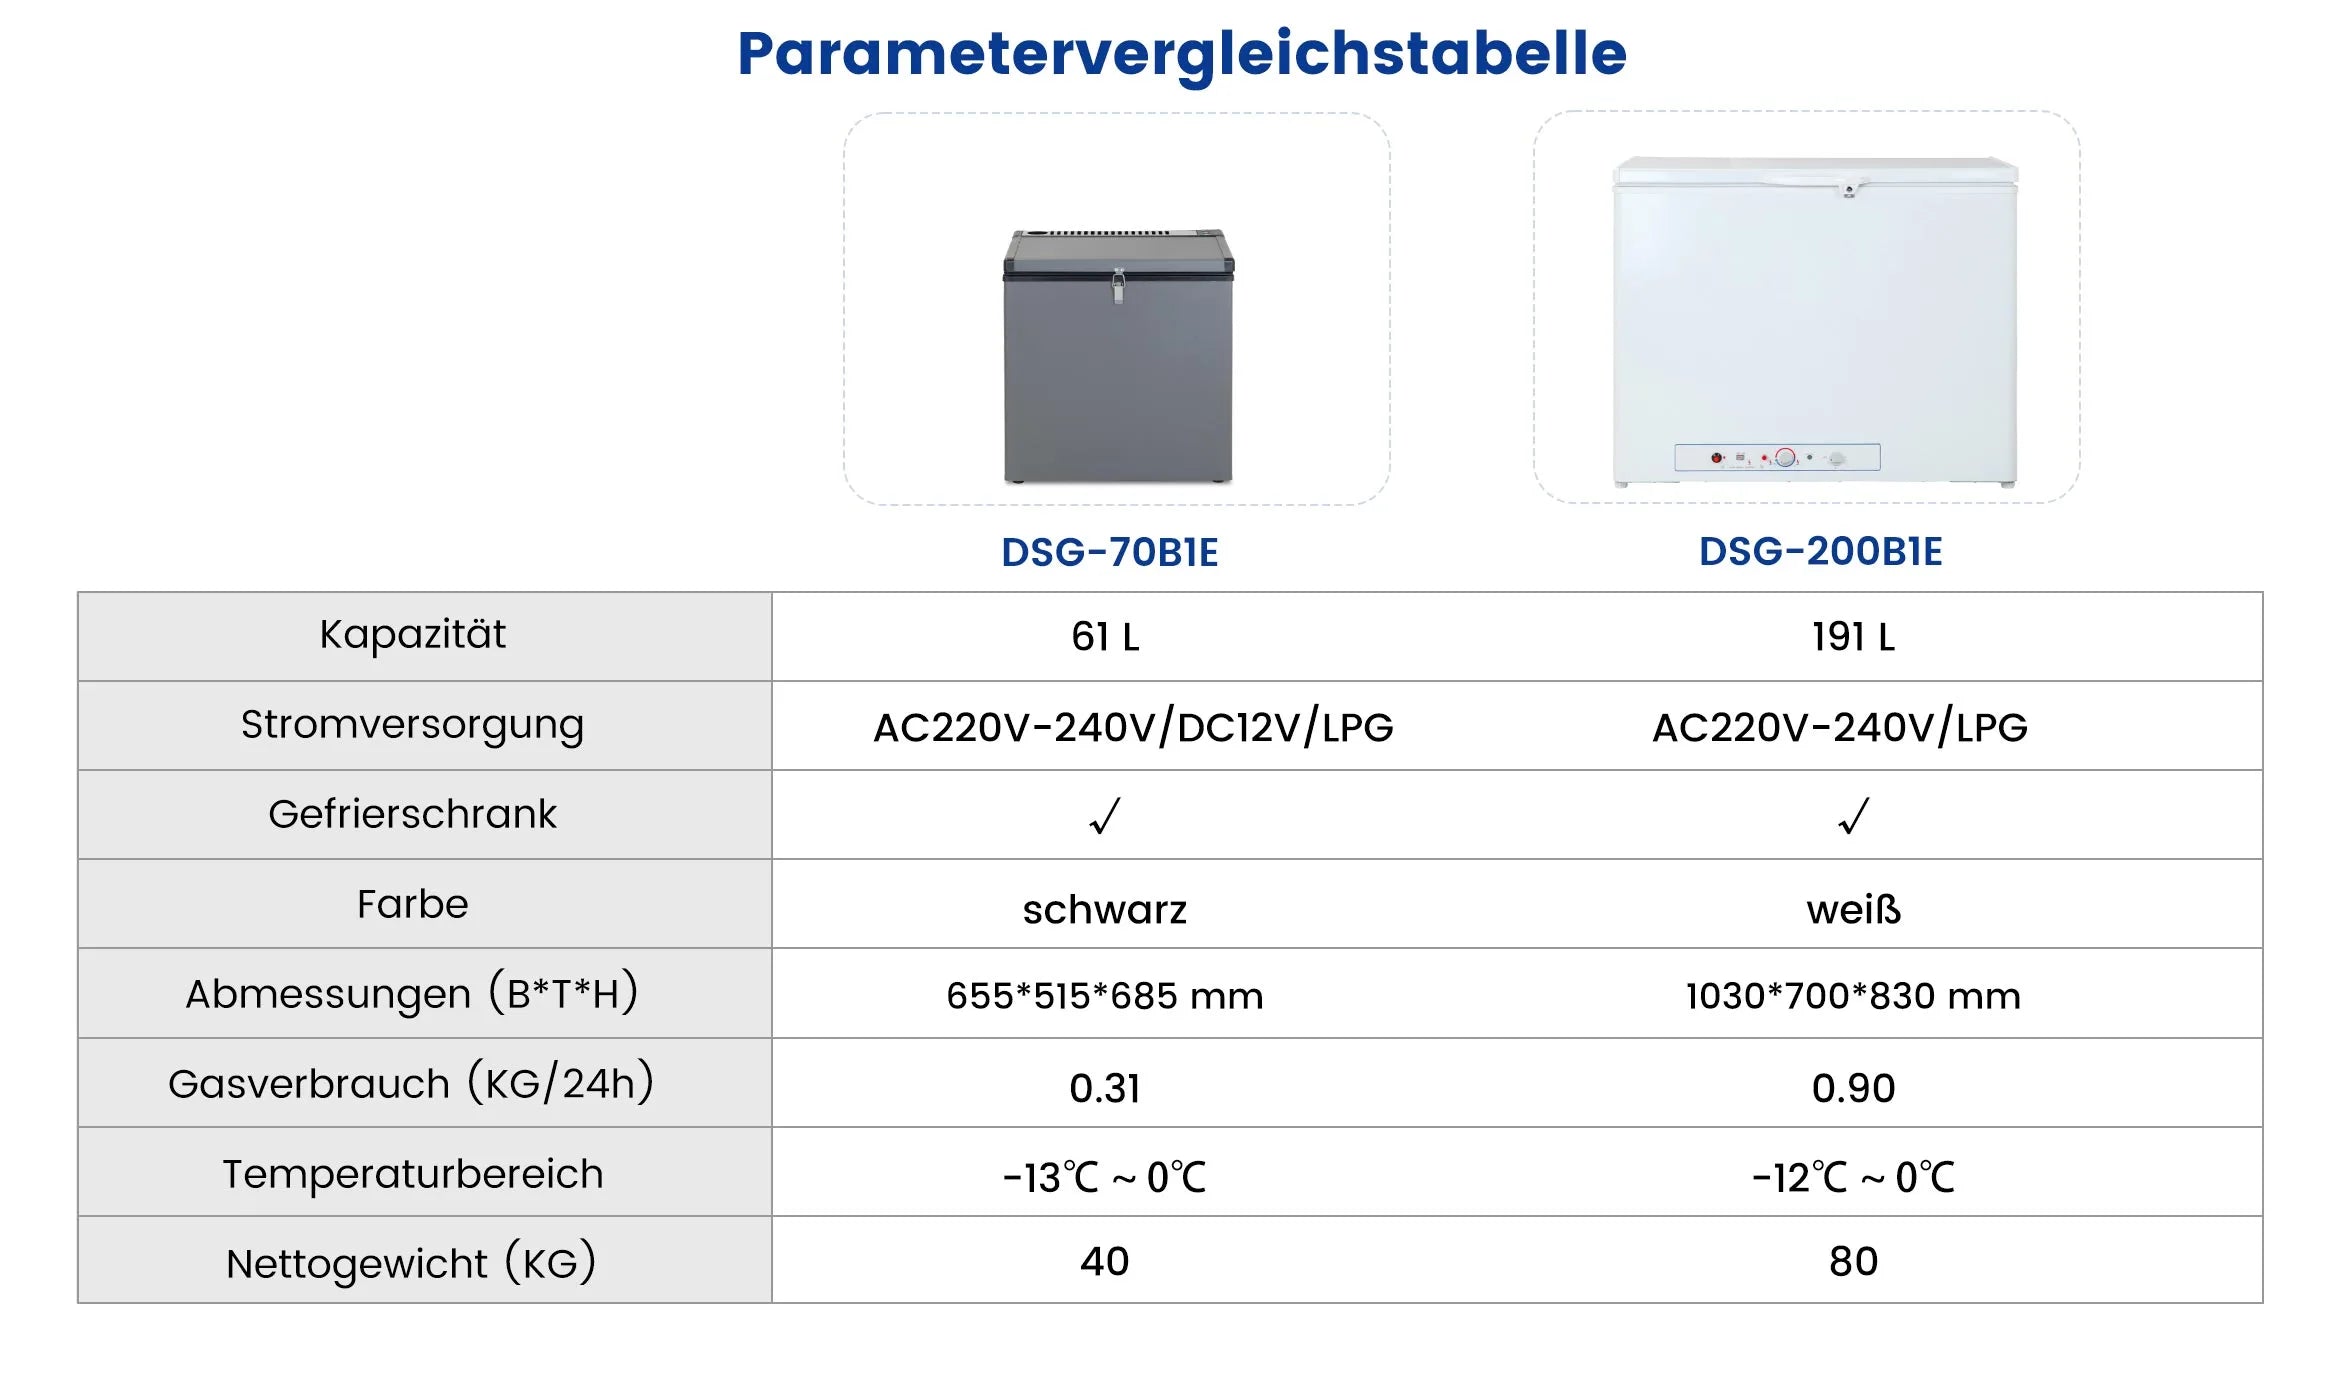 DSG-70B1E Parametervergleichstabelle